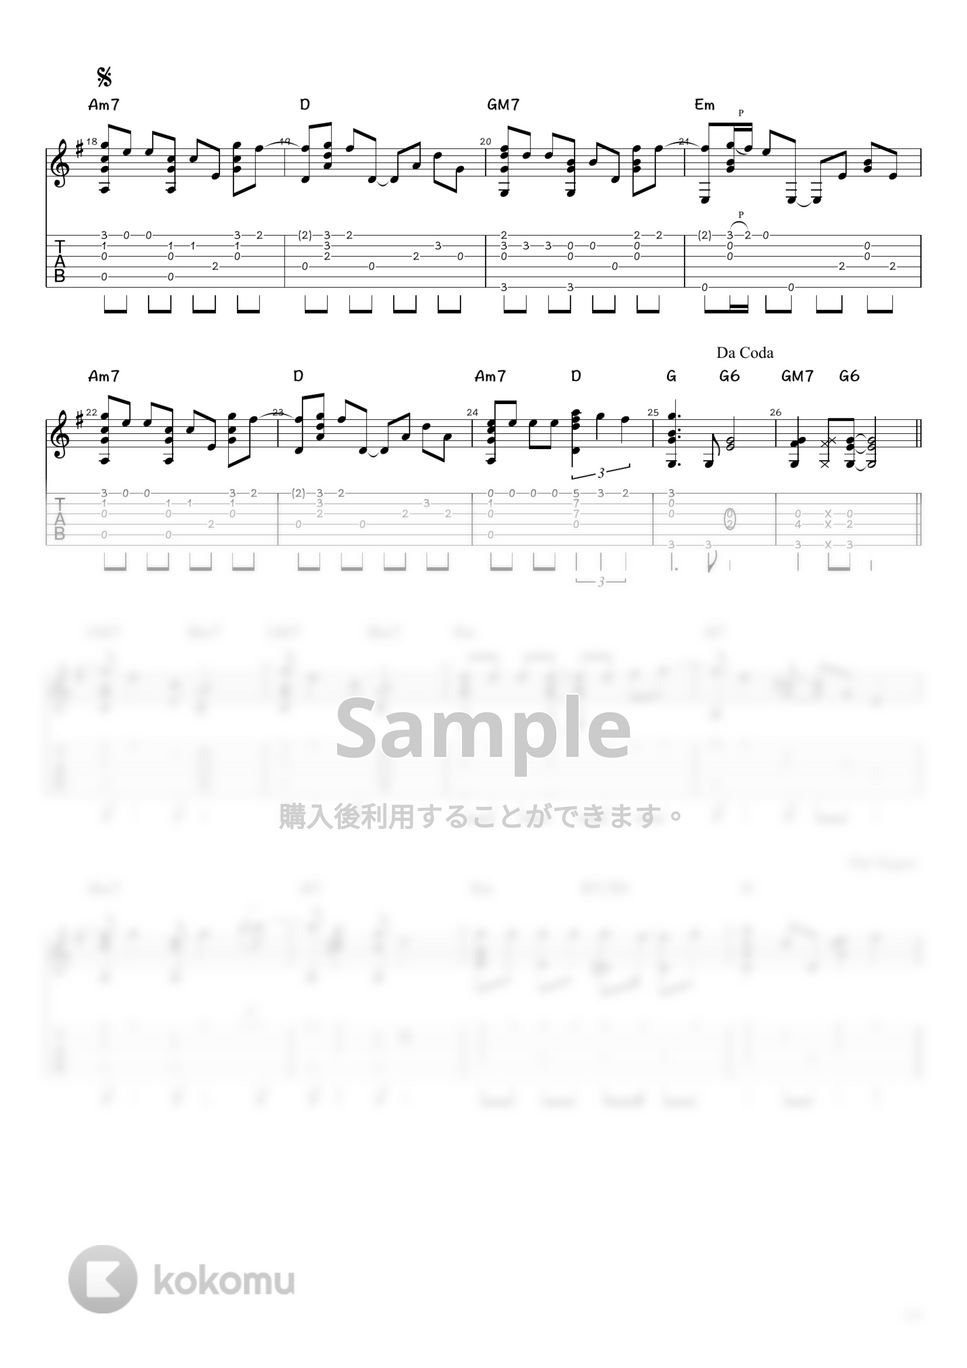 吉田美奈子 - 夢で逢えたら (ソロギター / タブ譜) by 井上さとみ